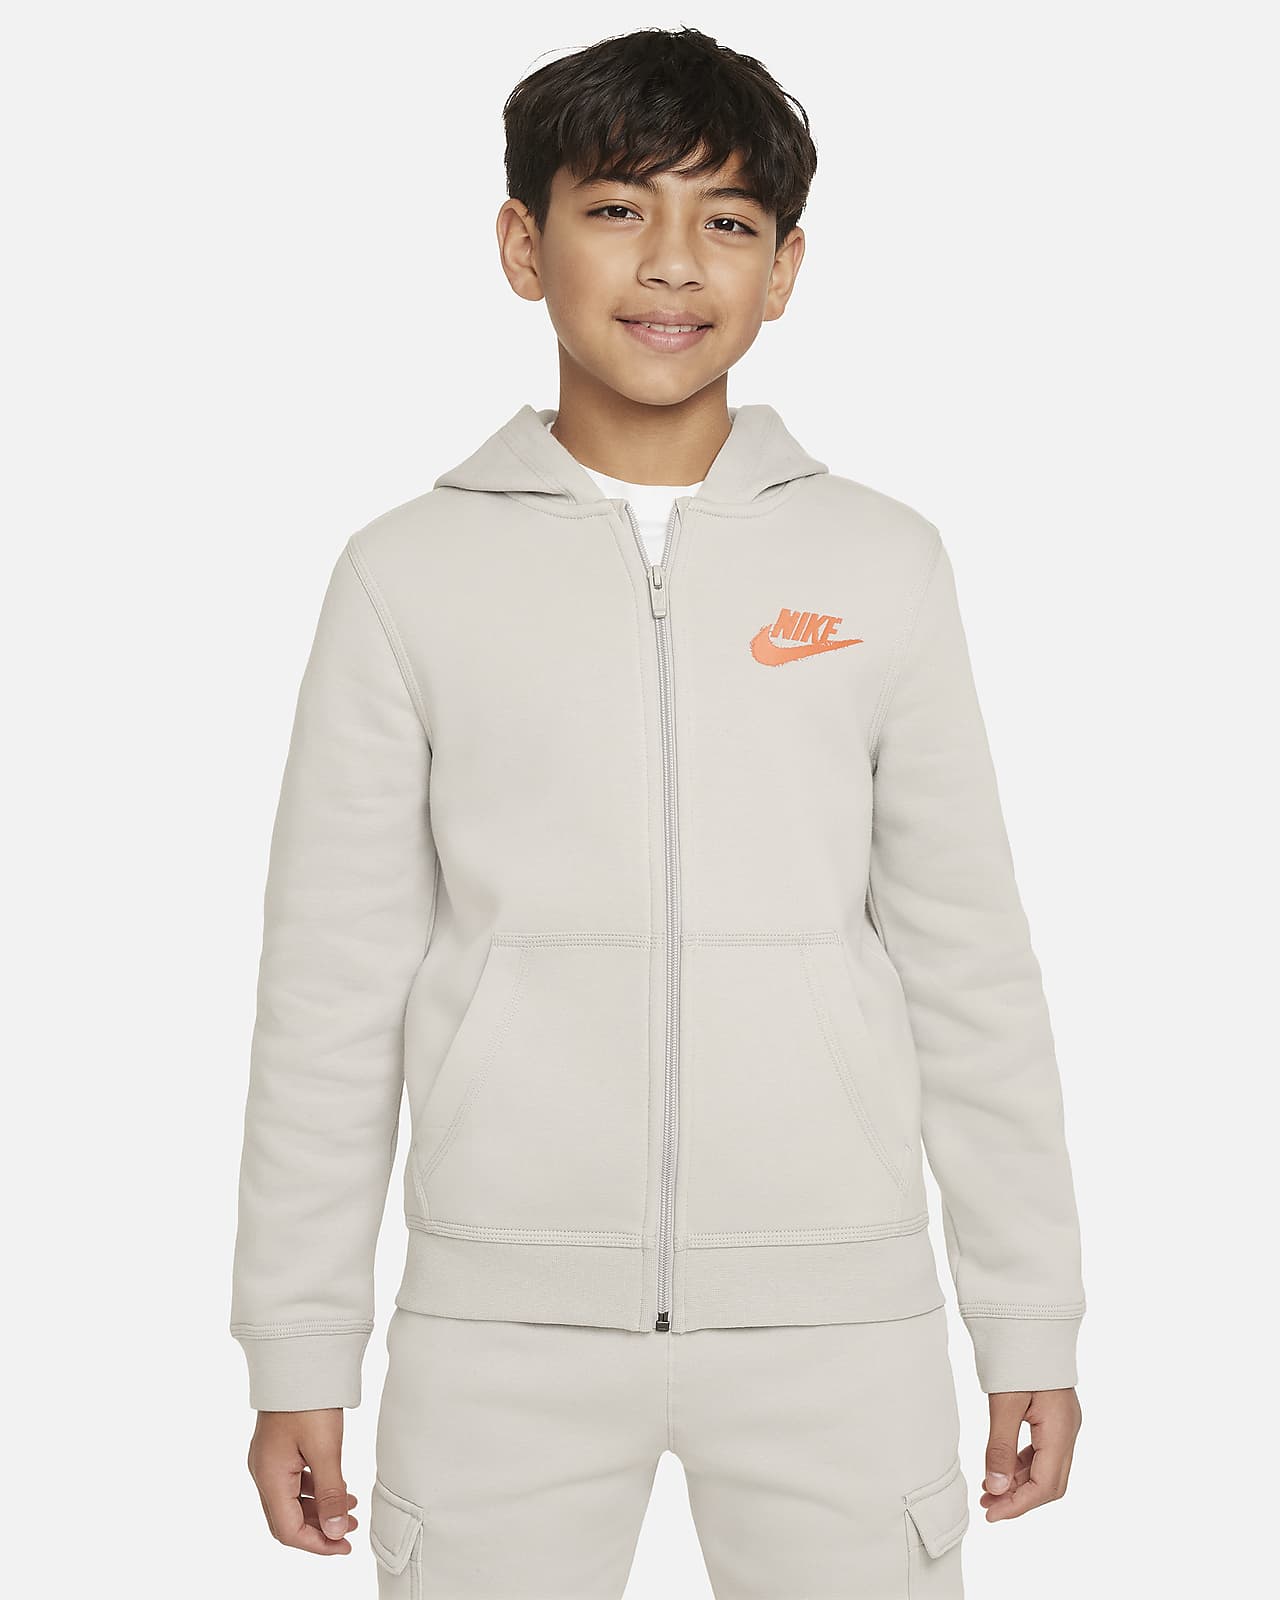 Nike Sportswear Hoodie für CH Kinder ältere mit (Jungen). und Grafikdetail Nike Reißverschluss durchgehendem